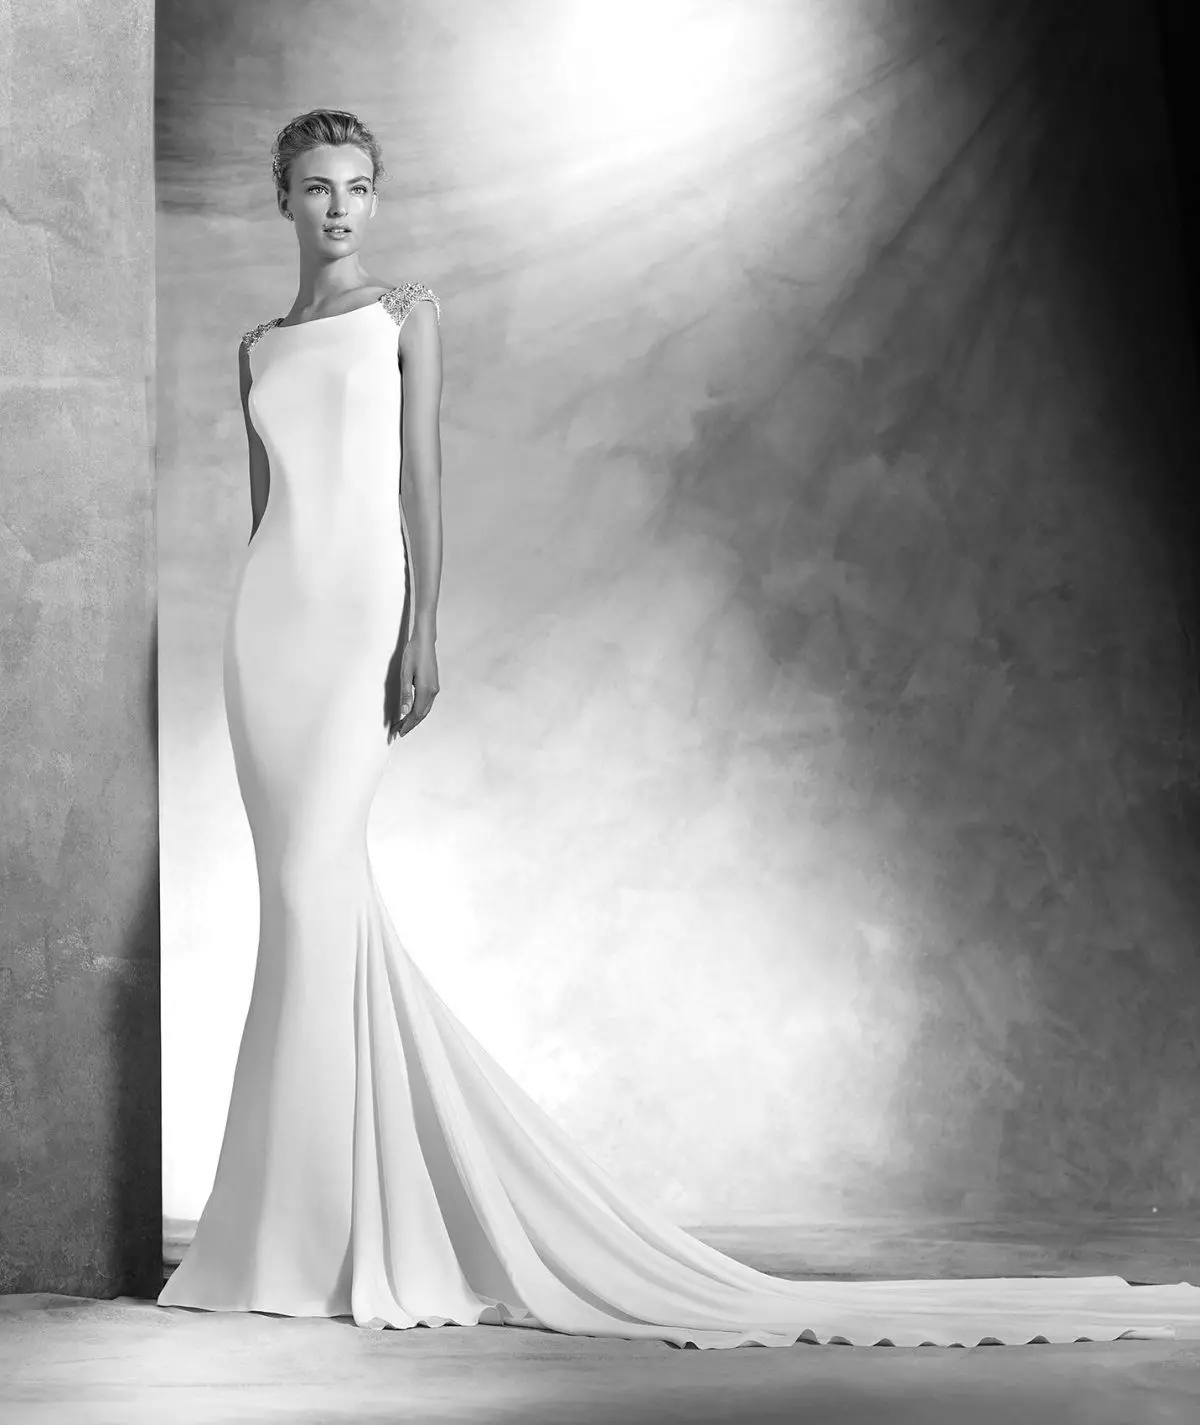 Provias 2016 से minimalism की शैली में शादी की पोशाक